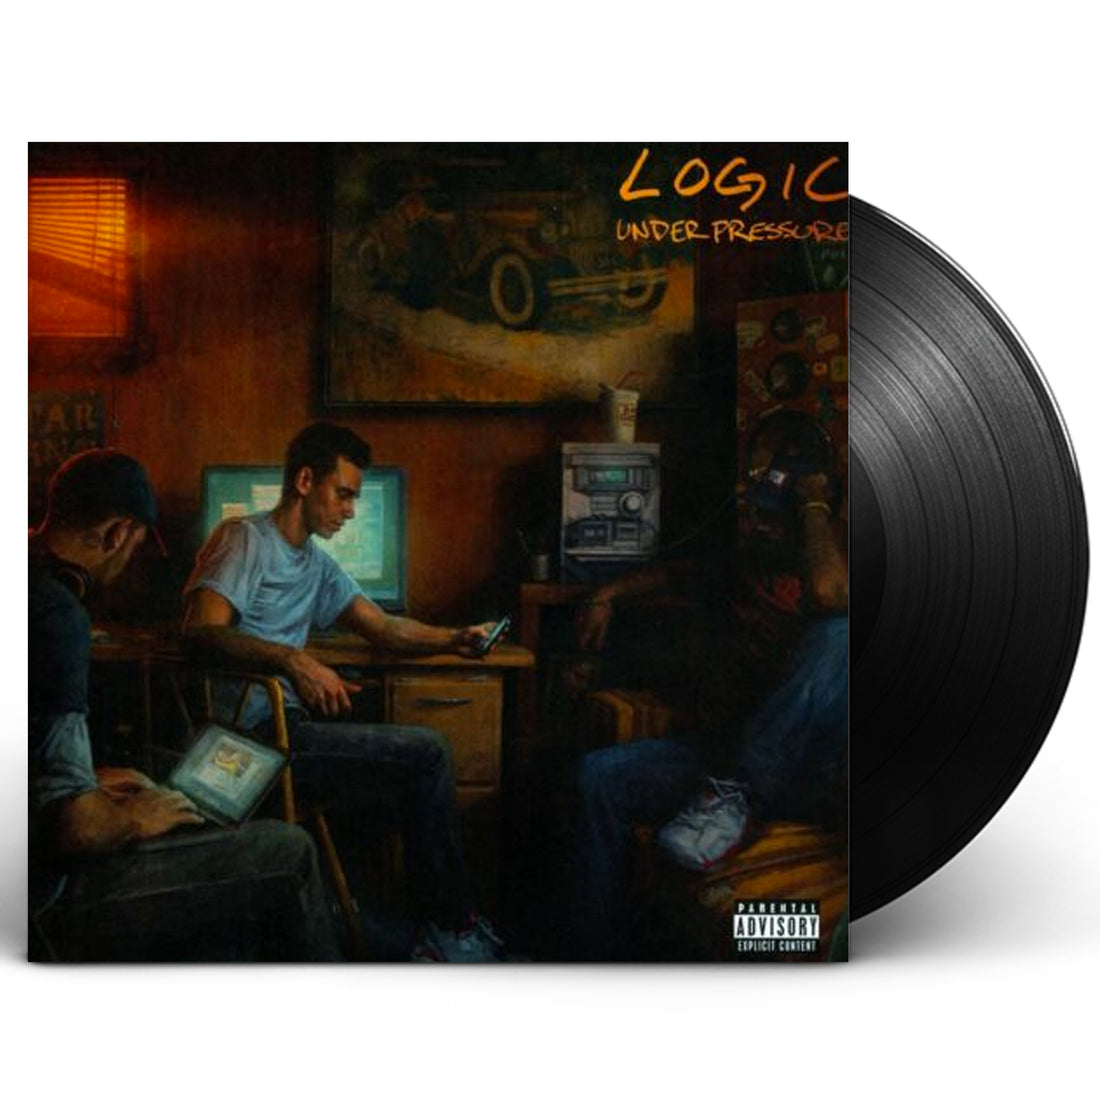 Logic "Under Pressure" LP Vinyl